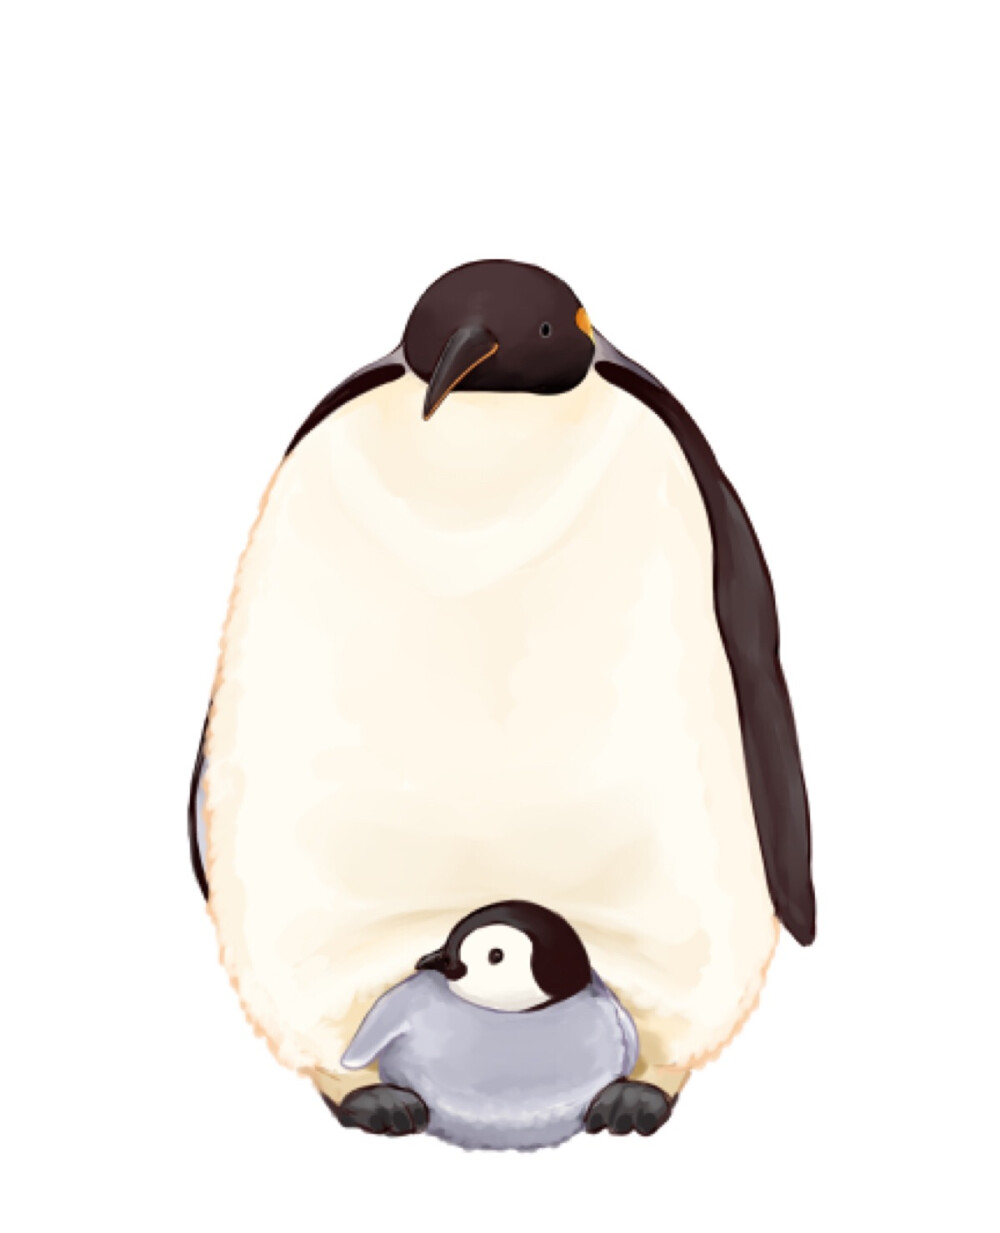 大企鹅与小企鹅.